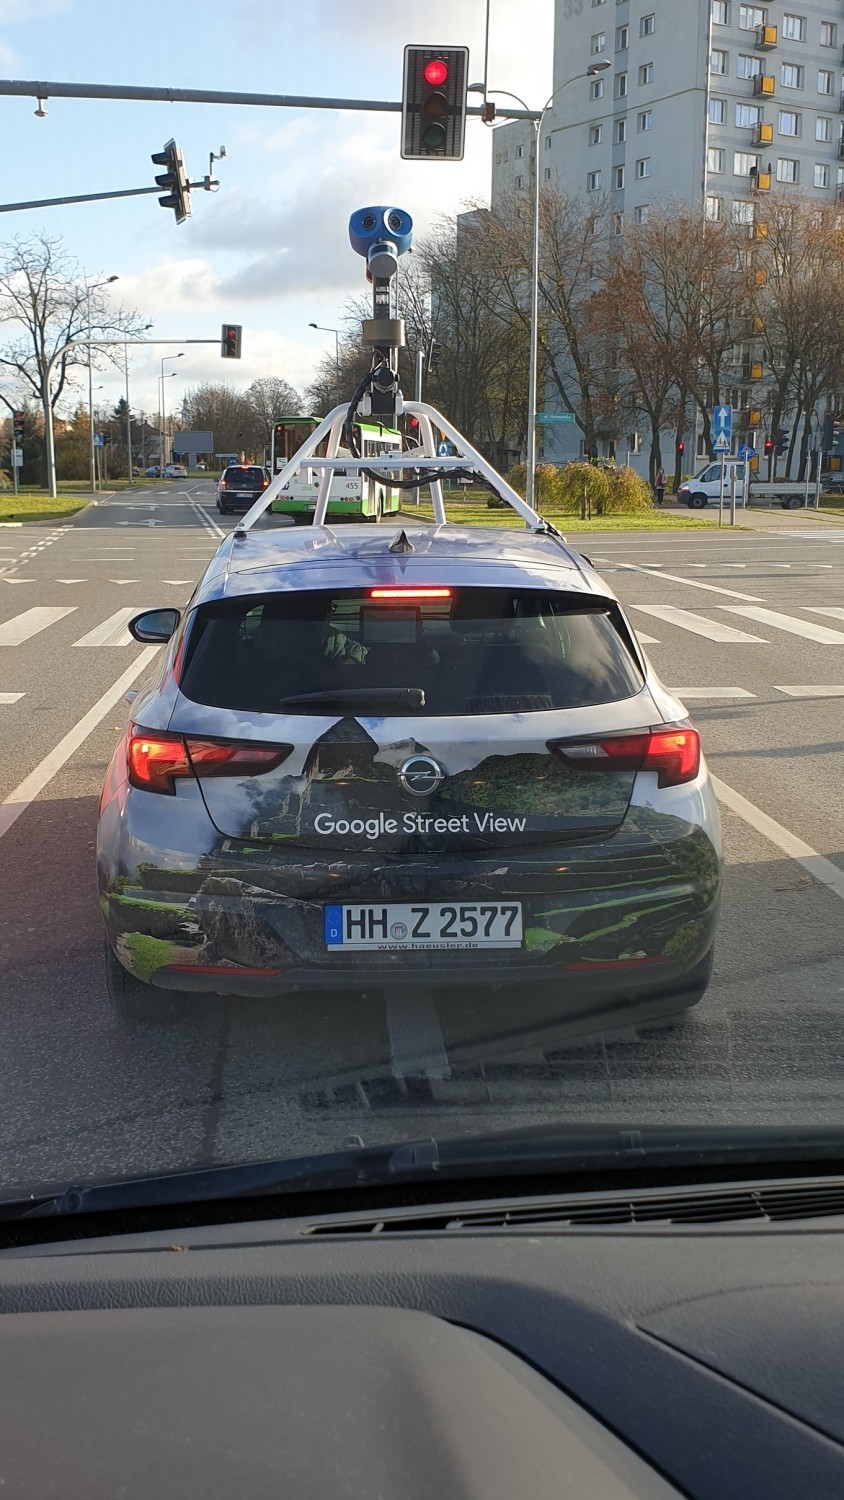 Samochód Google Street View w Białymstoku listopad 2020